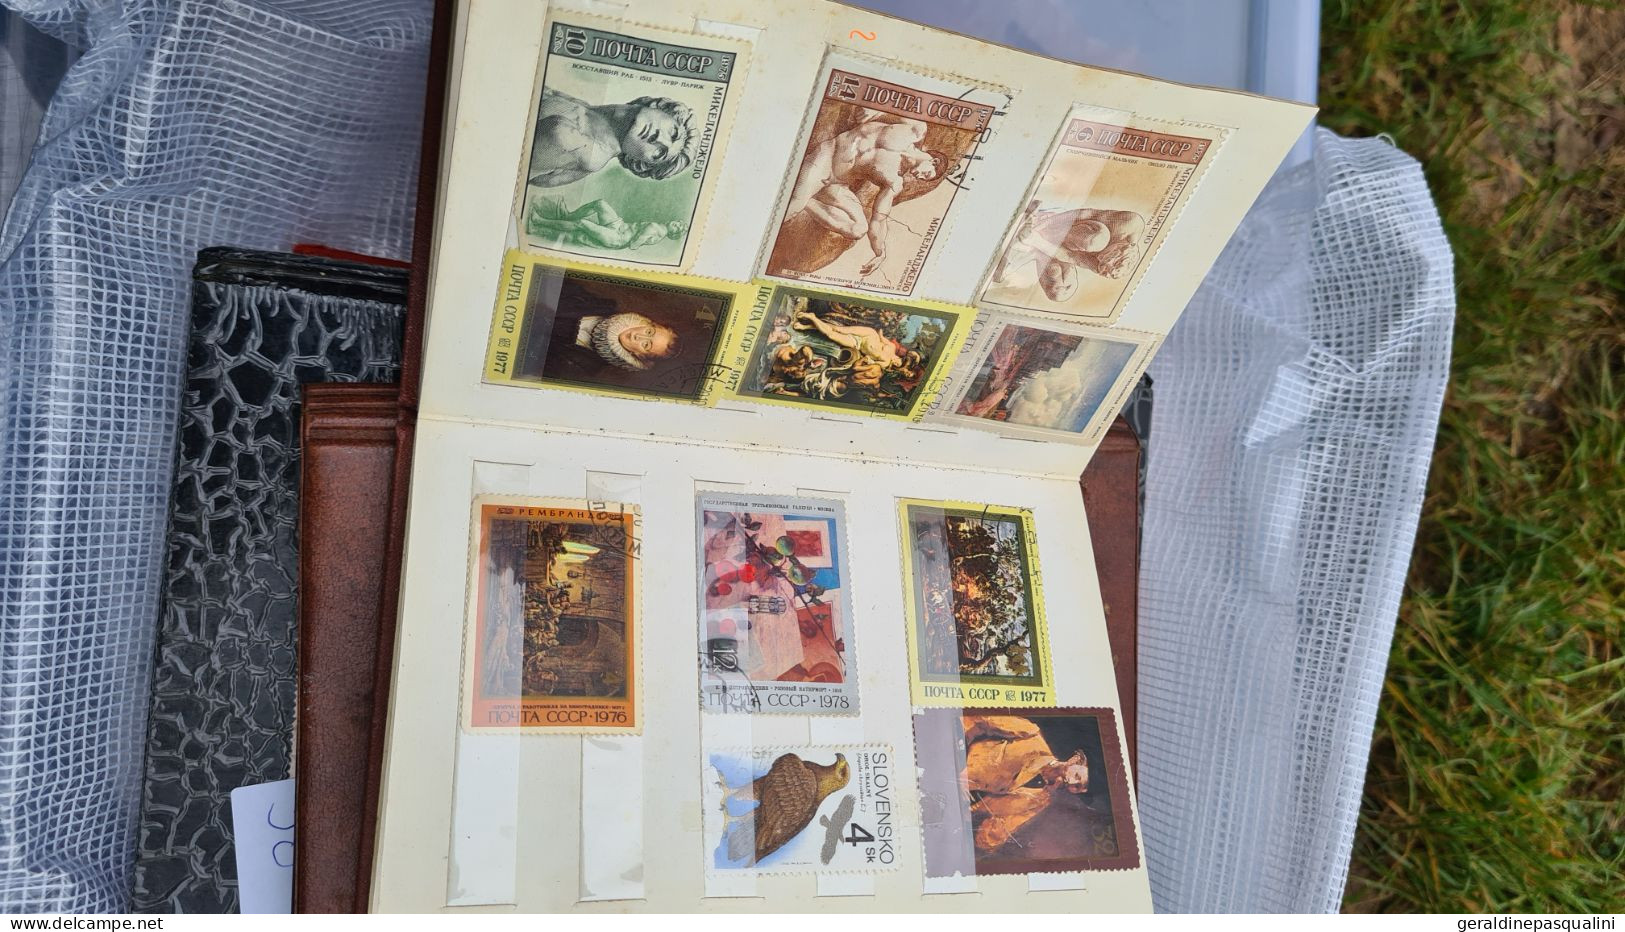 Gros lot de timbres en vrac et albums